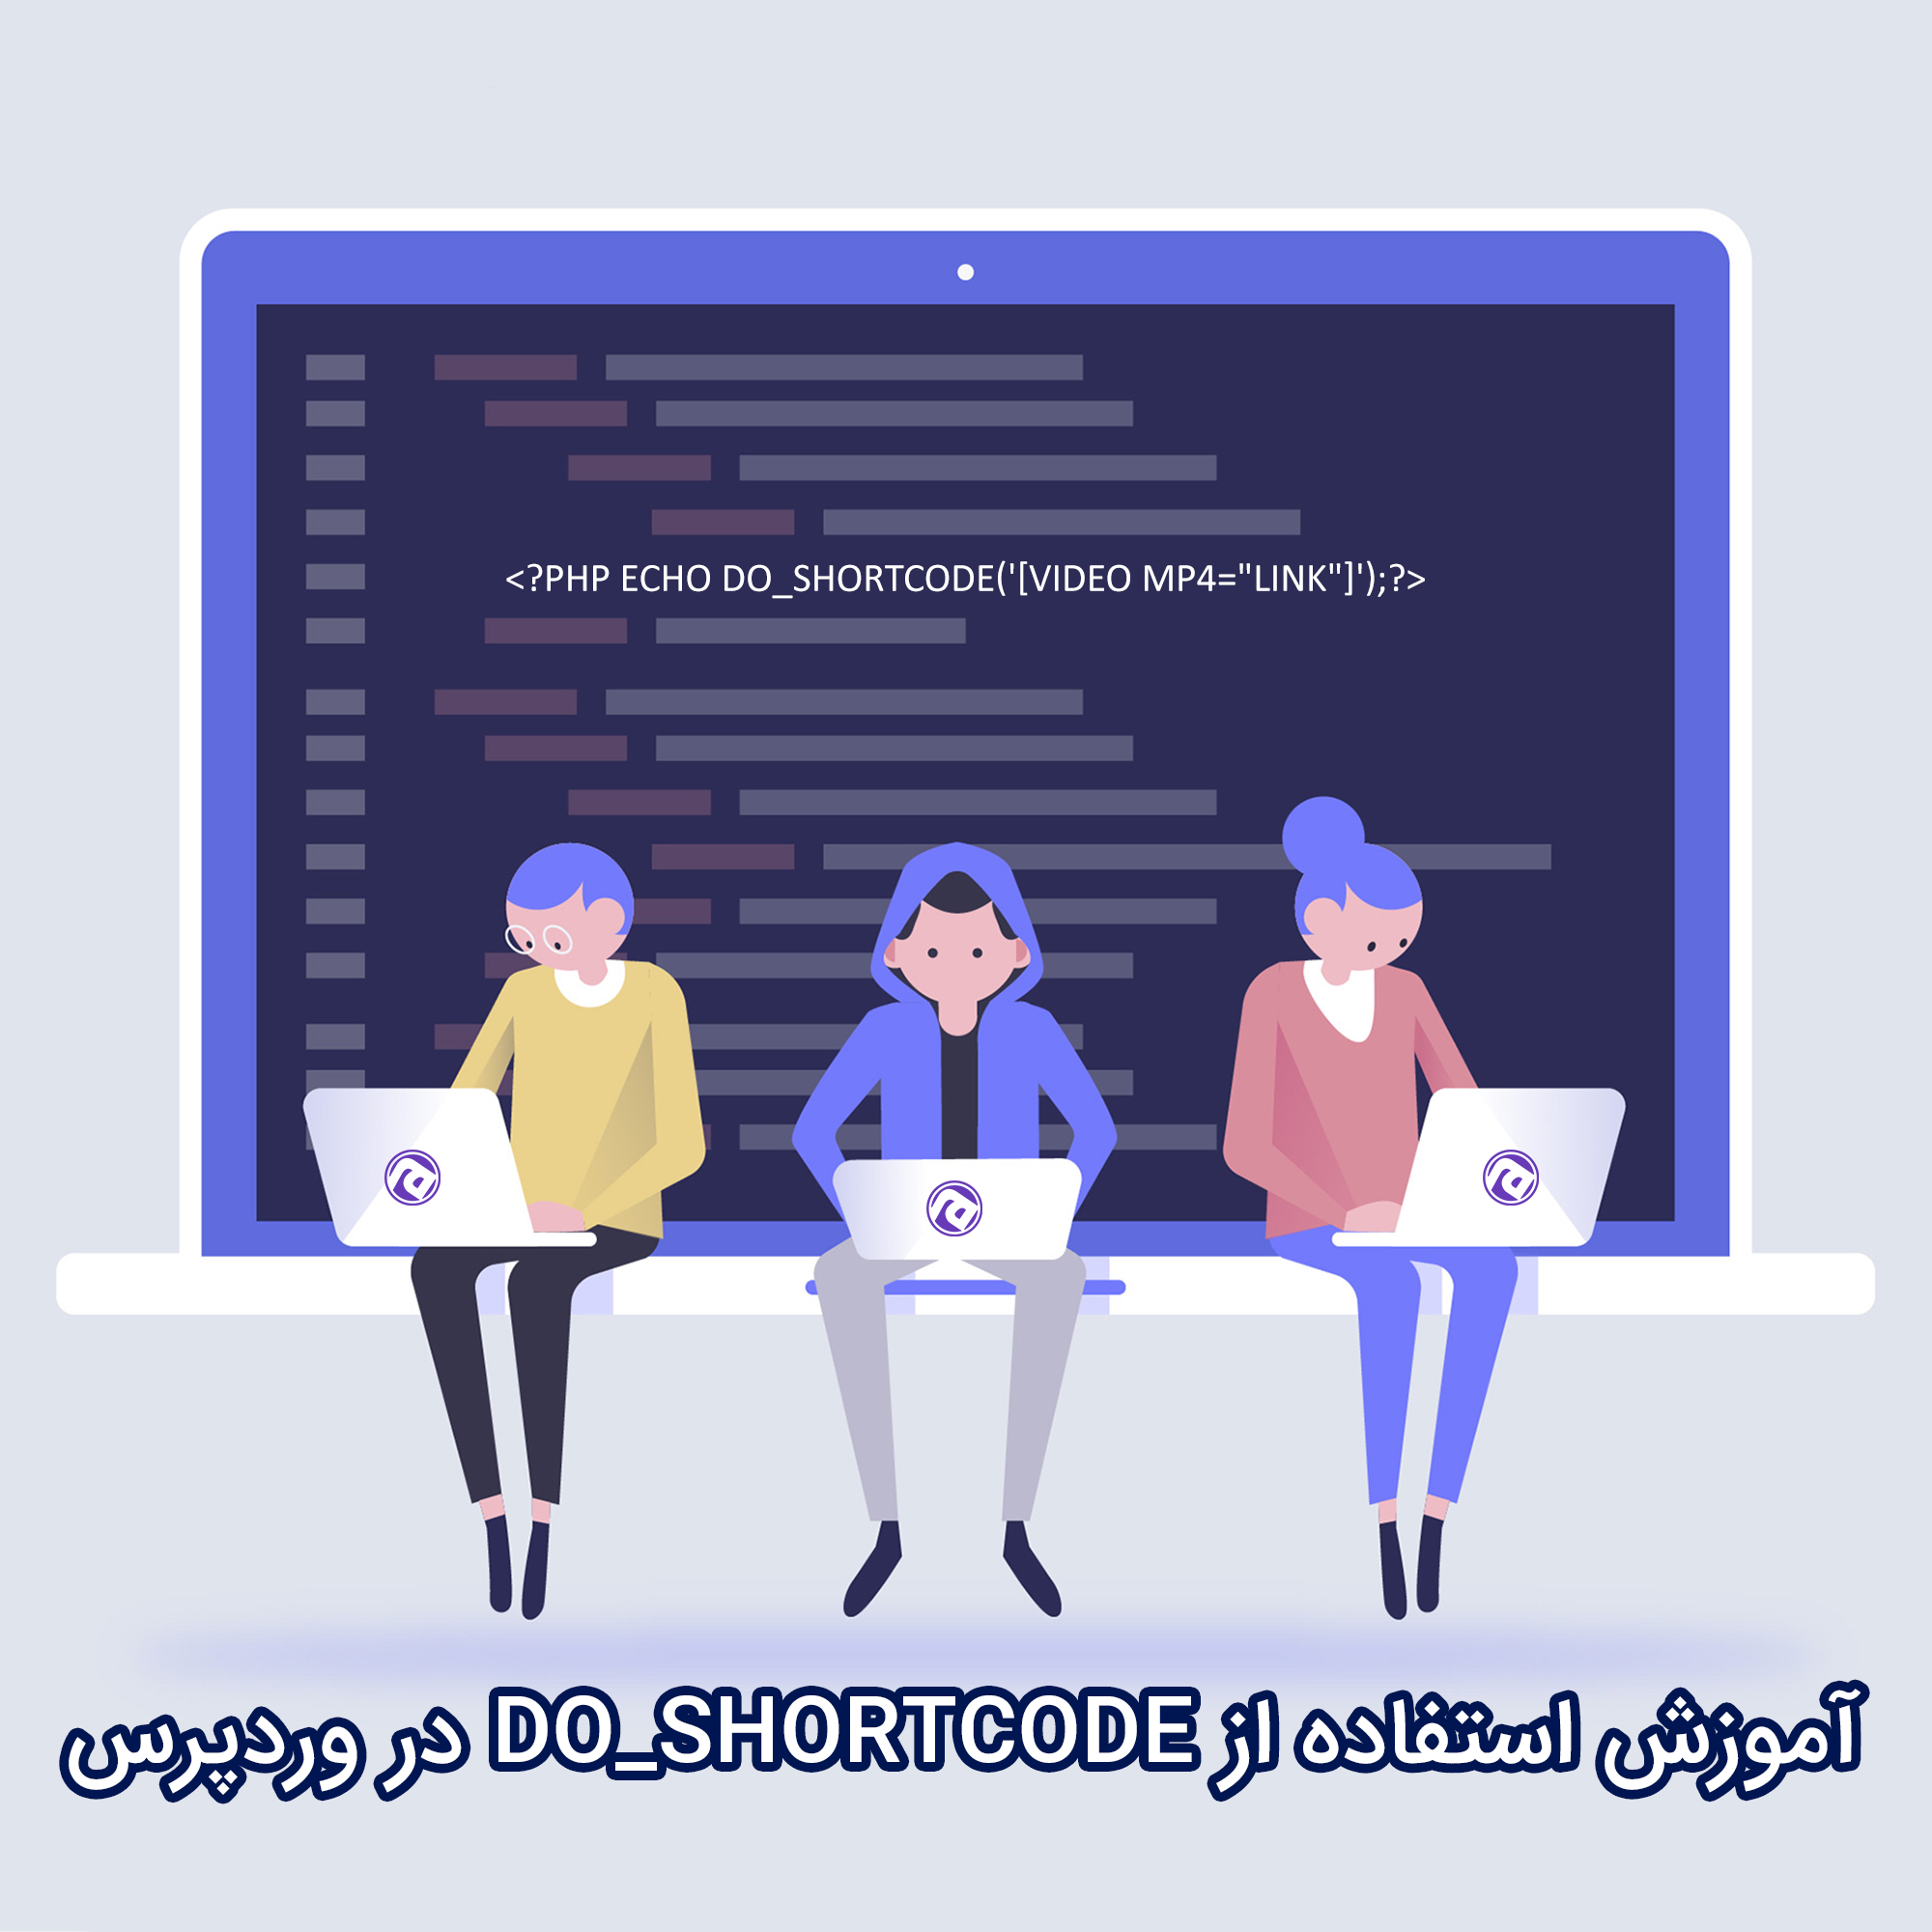 نمایش شورت کد در قالب وردپرس با استفاده از تابع do_shortcode